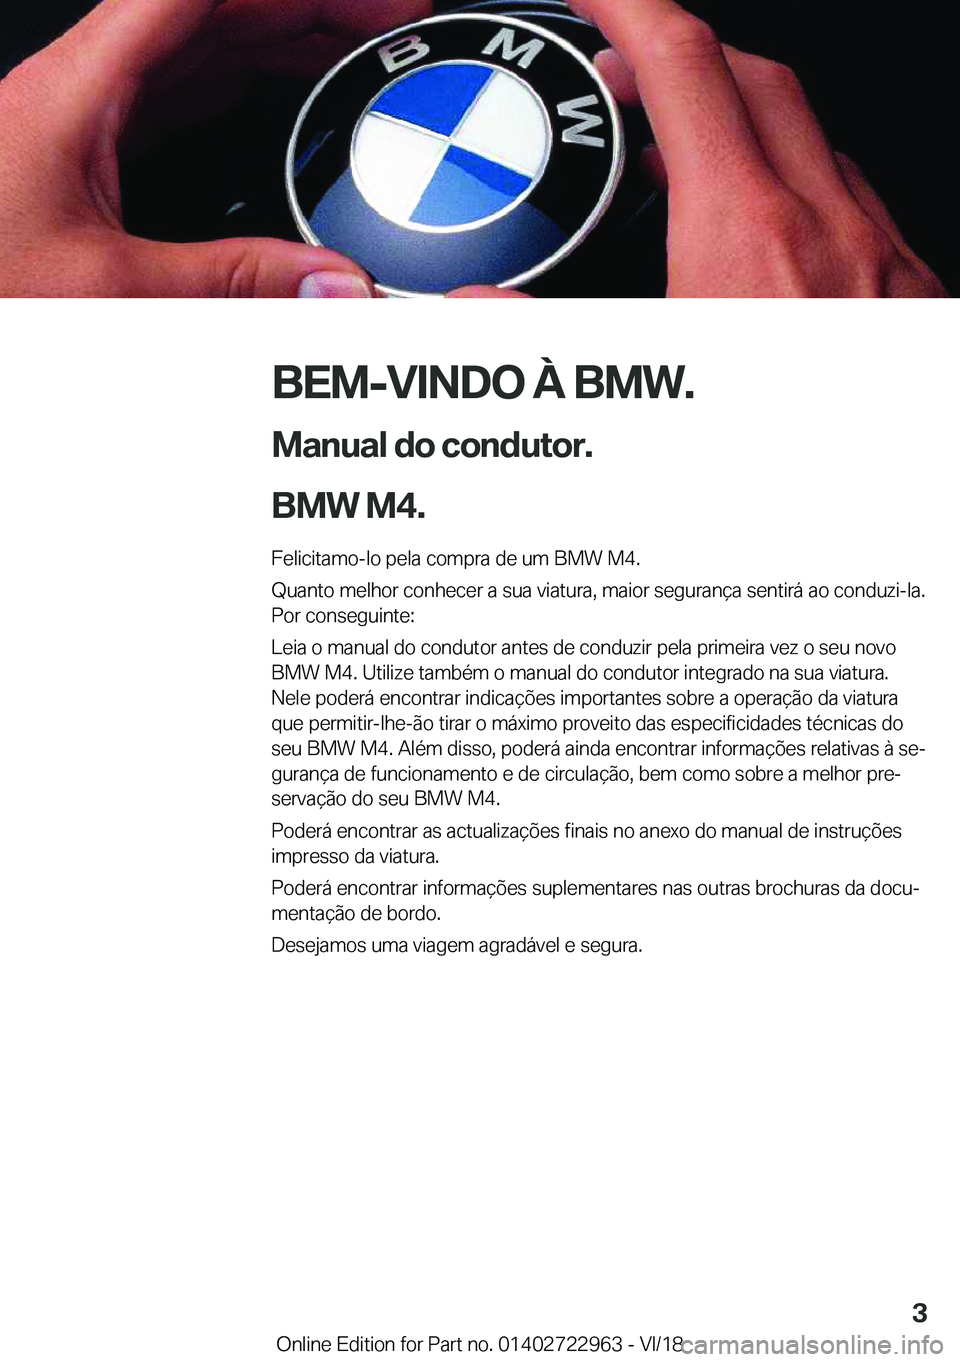 BMW M4 2019  Manual do condutor (in Portuguese) �B�E�M�-�V�I�N�D�O��À��B�M�W�.
�M�a�n�u�a�l��d�o��c�o�n�d�u�t�o�r�.
�B�M�W��M�4�. �F�e�l�i�c�i�t�a�m�o�-�l�o��p�e�l�a��c�o�m�p�r�a��d�e��u�m��B�M�W��M�4�.
�Q�u�a�n�t�o��m�e�l�h�o�r��c�o�